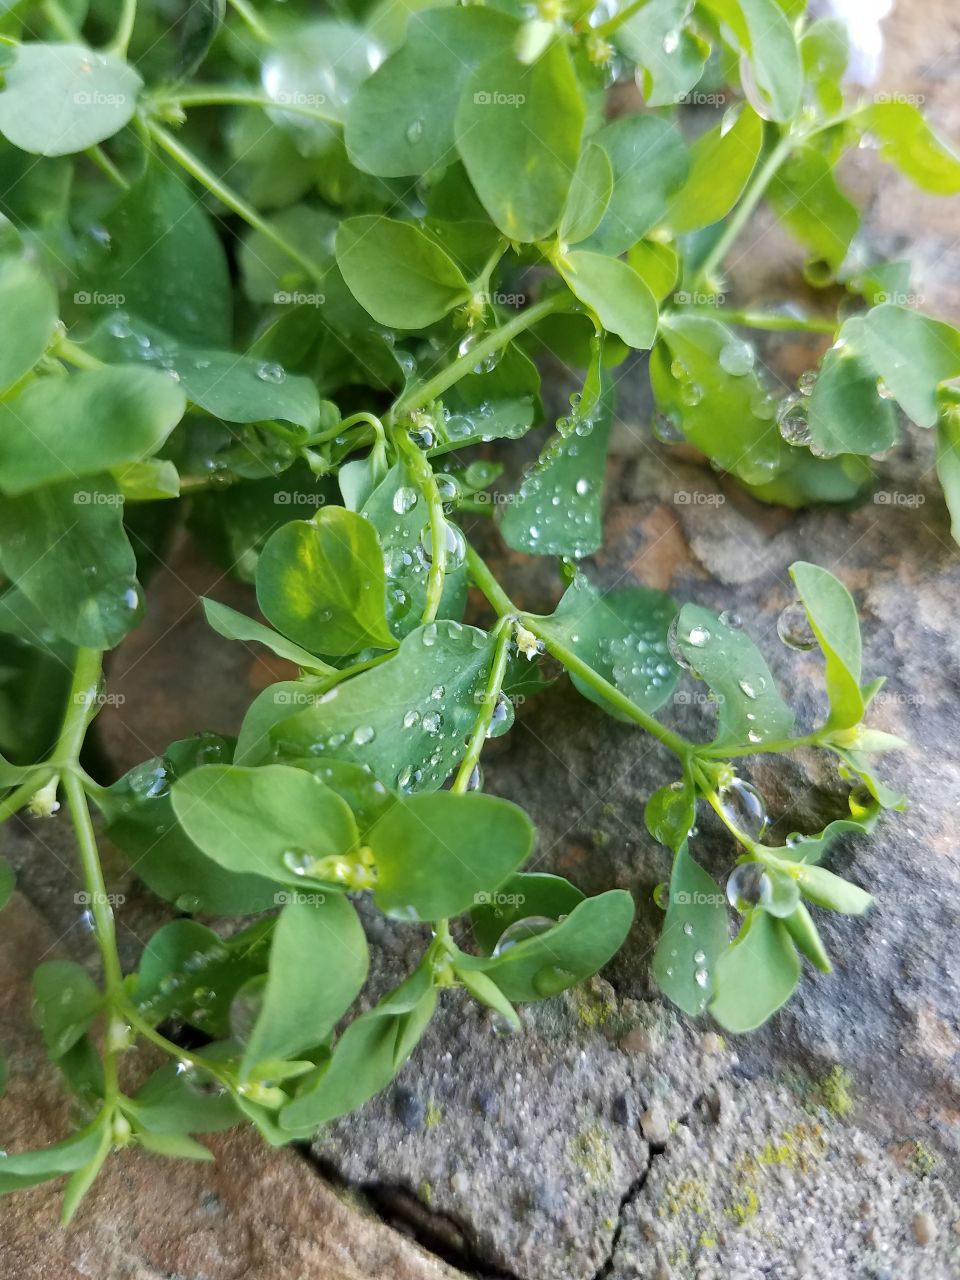 Dew, Leaves, & Brick